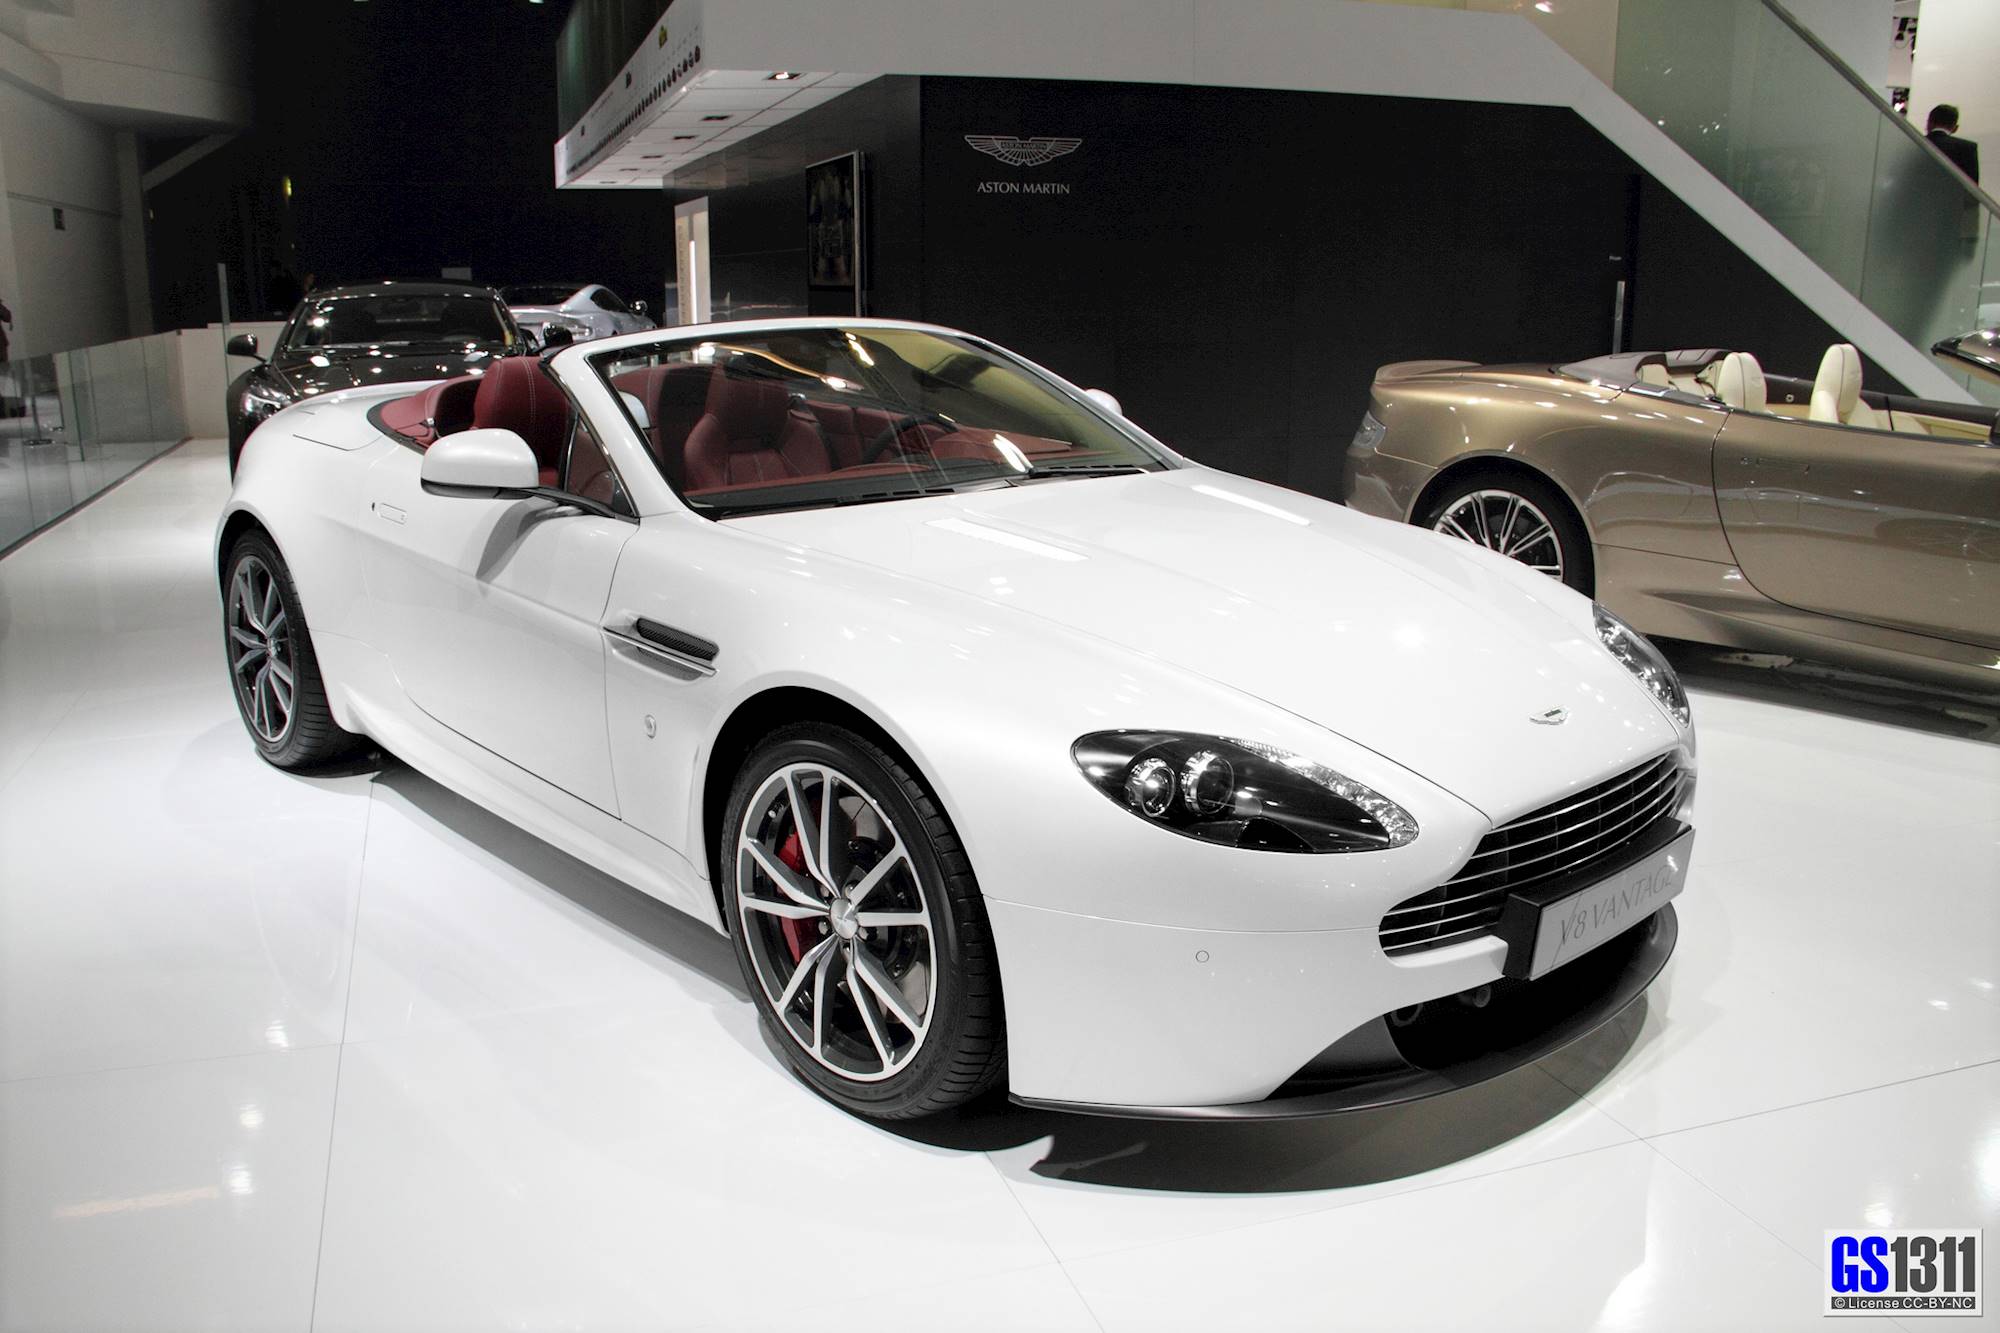 Автомобиль за миллион рублей. 2006 Aston Martin v8 Vantage White. Машины за 4 миллиона. Машина за миллион рублей.